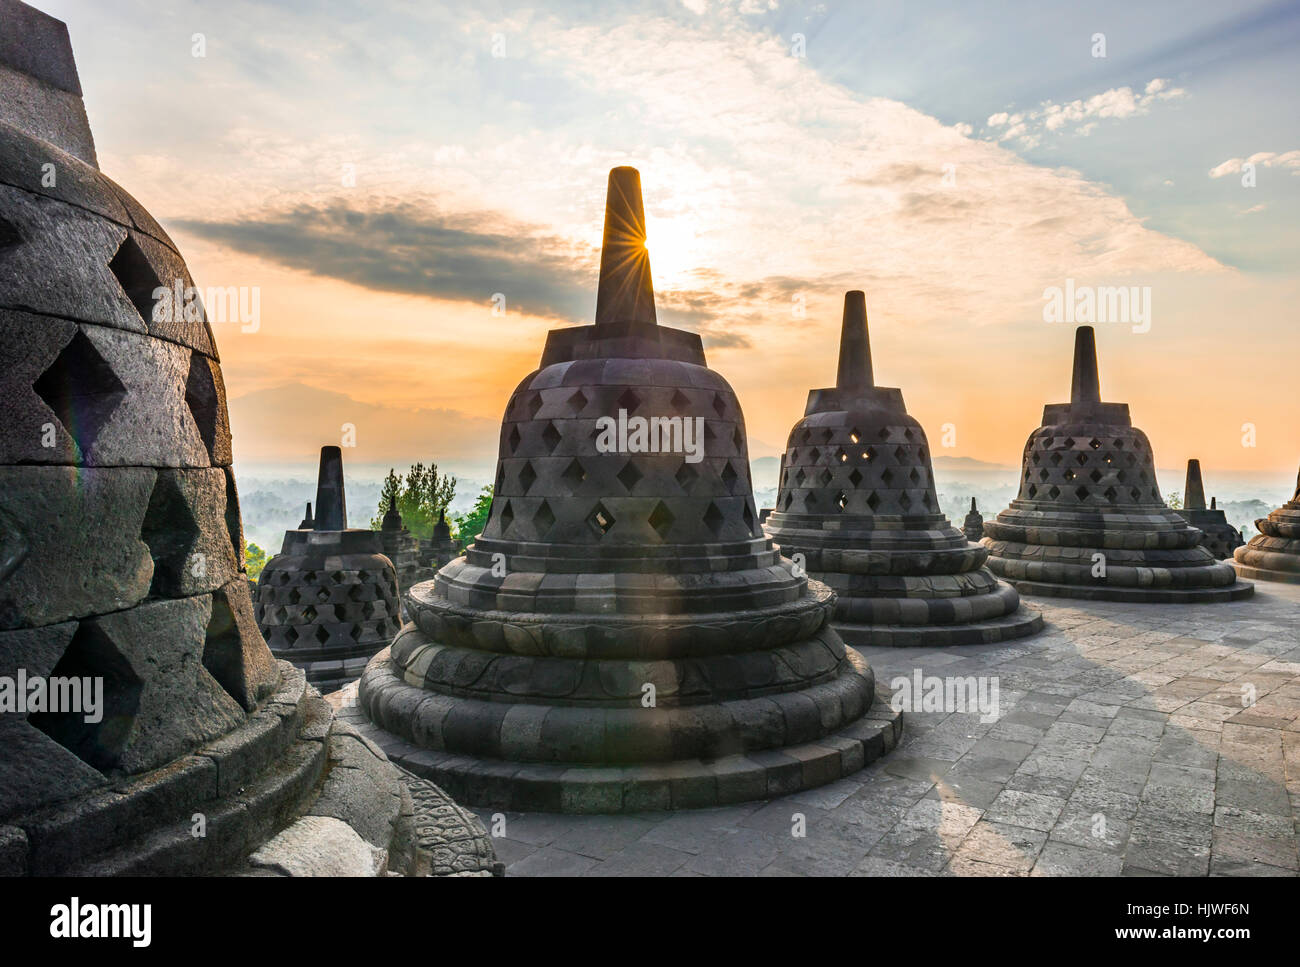 Temple de Borobudur au lever du soleil, stupas, ciel nuageux, Borobudur, Yogyakarta, Java, Indonésie Banque D'Images